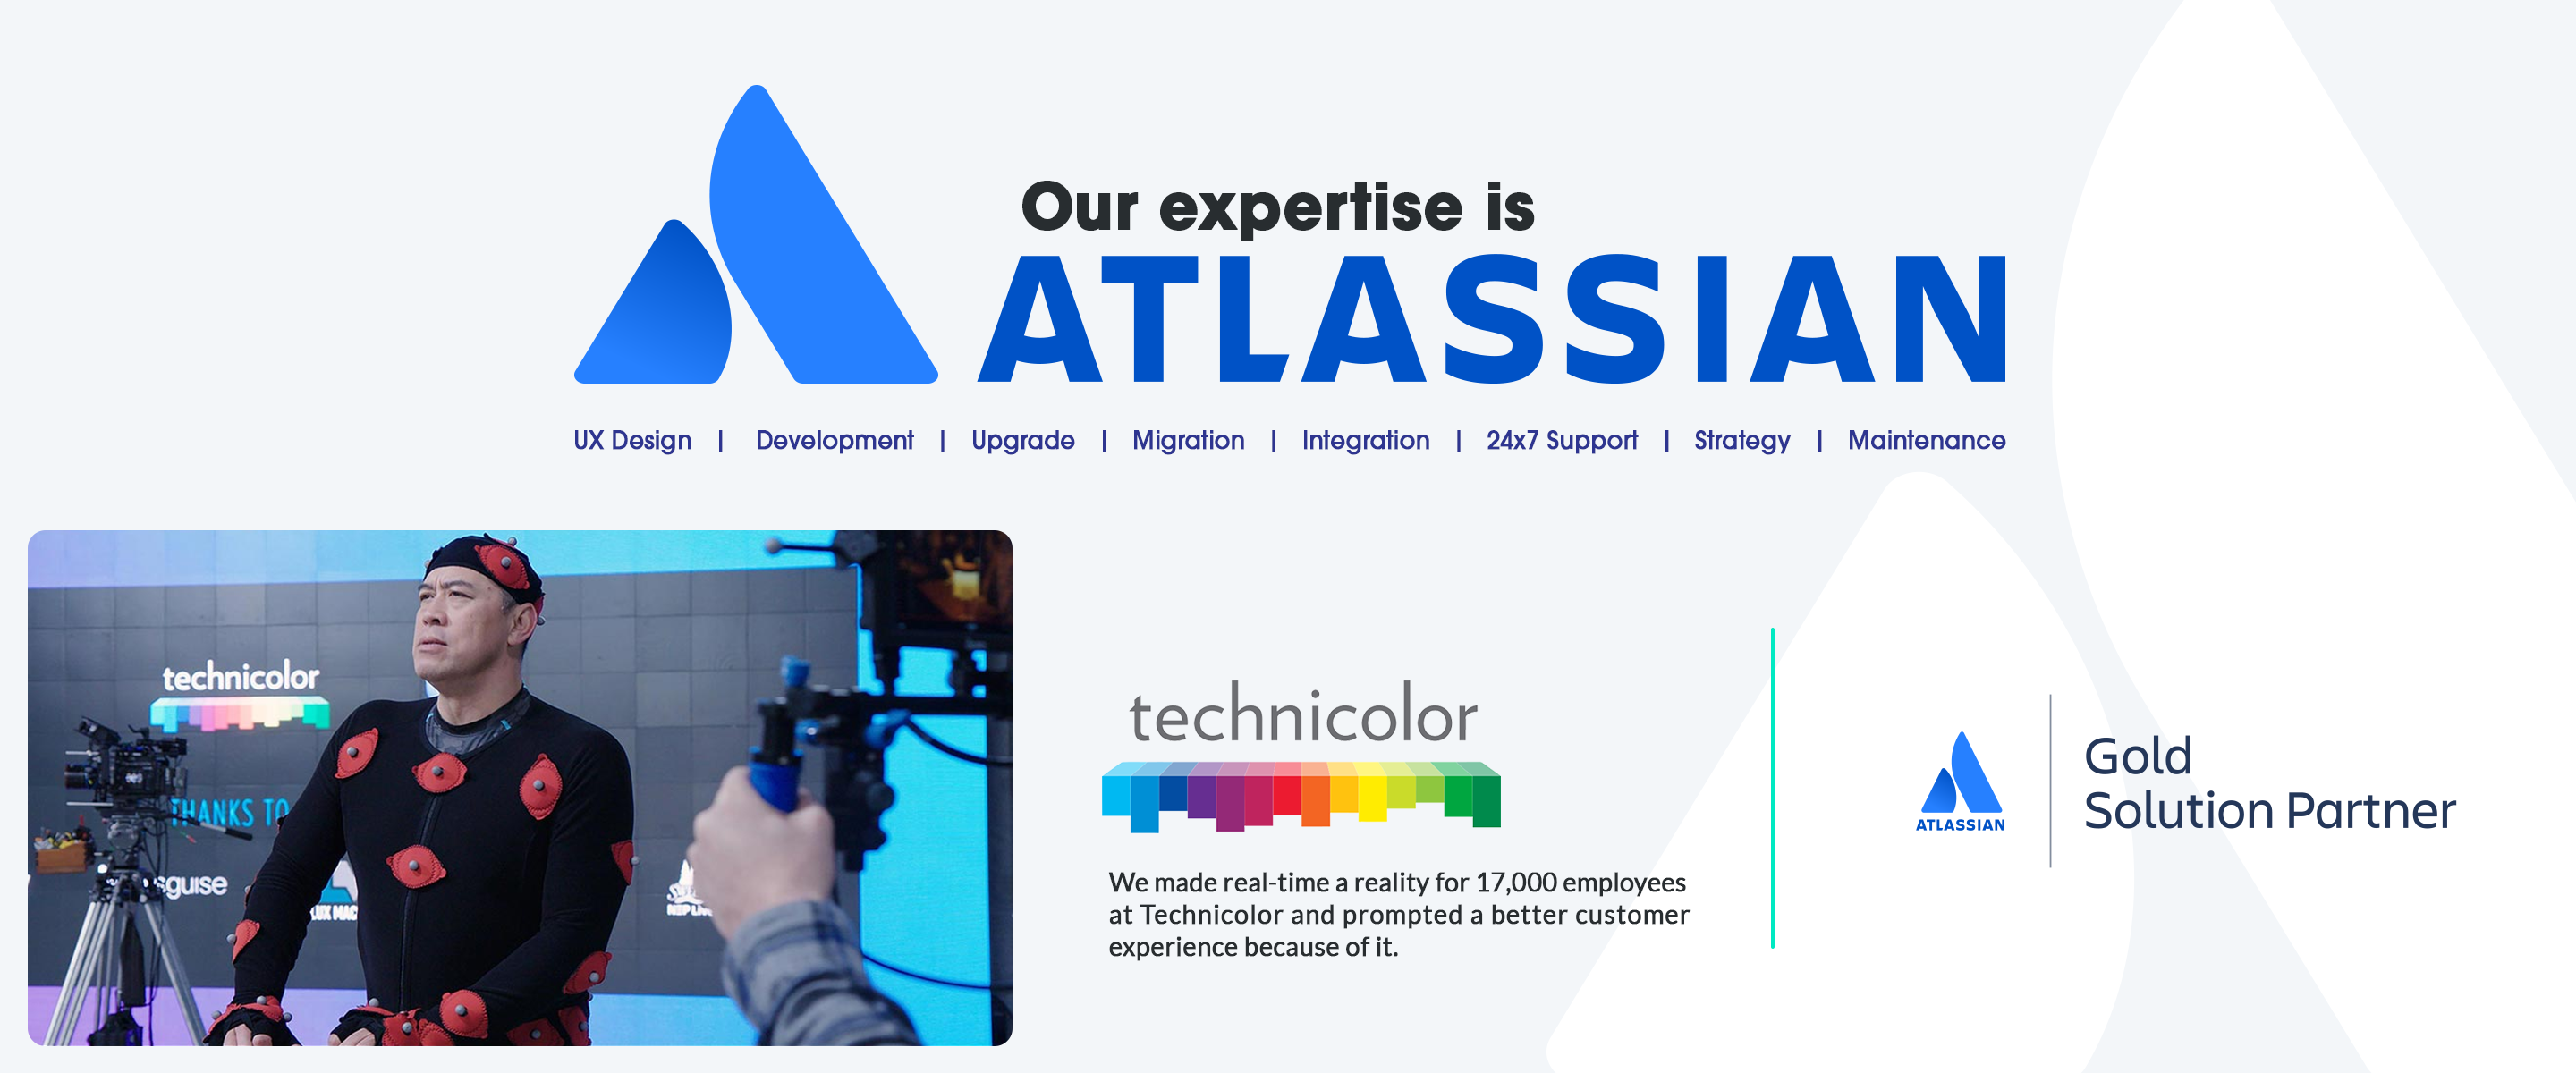 atlassian development, atlassian development services, atlassian development company